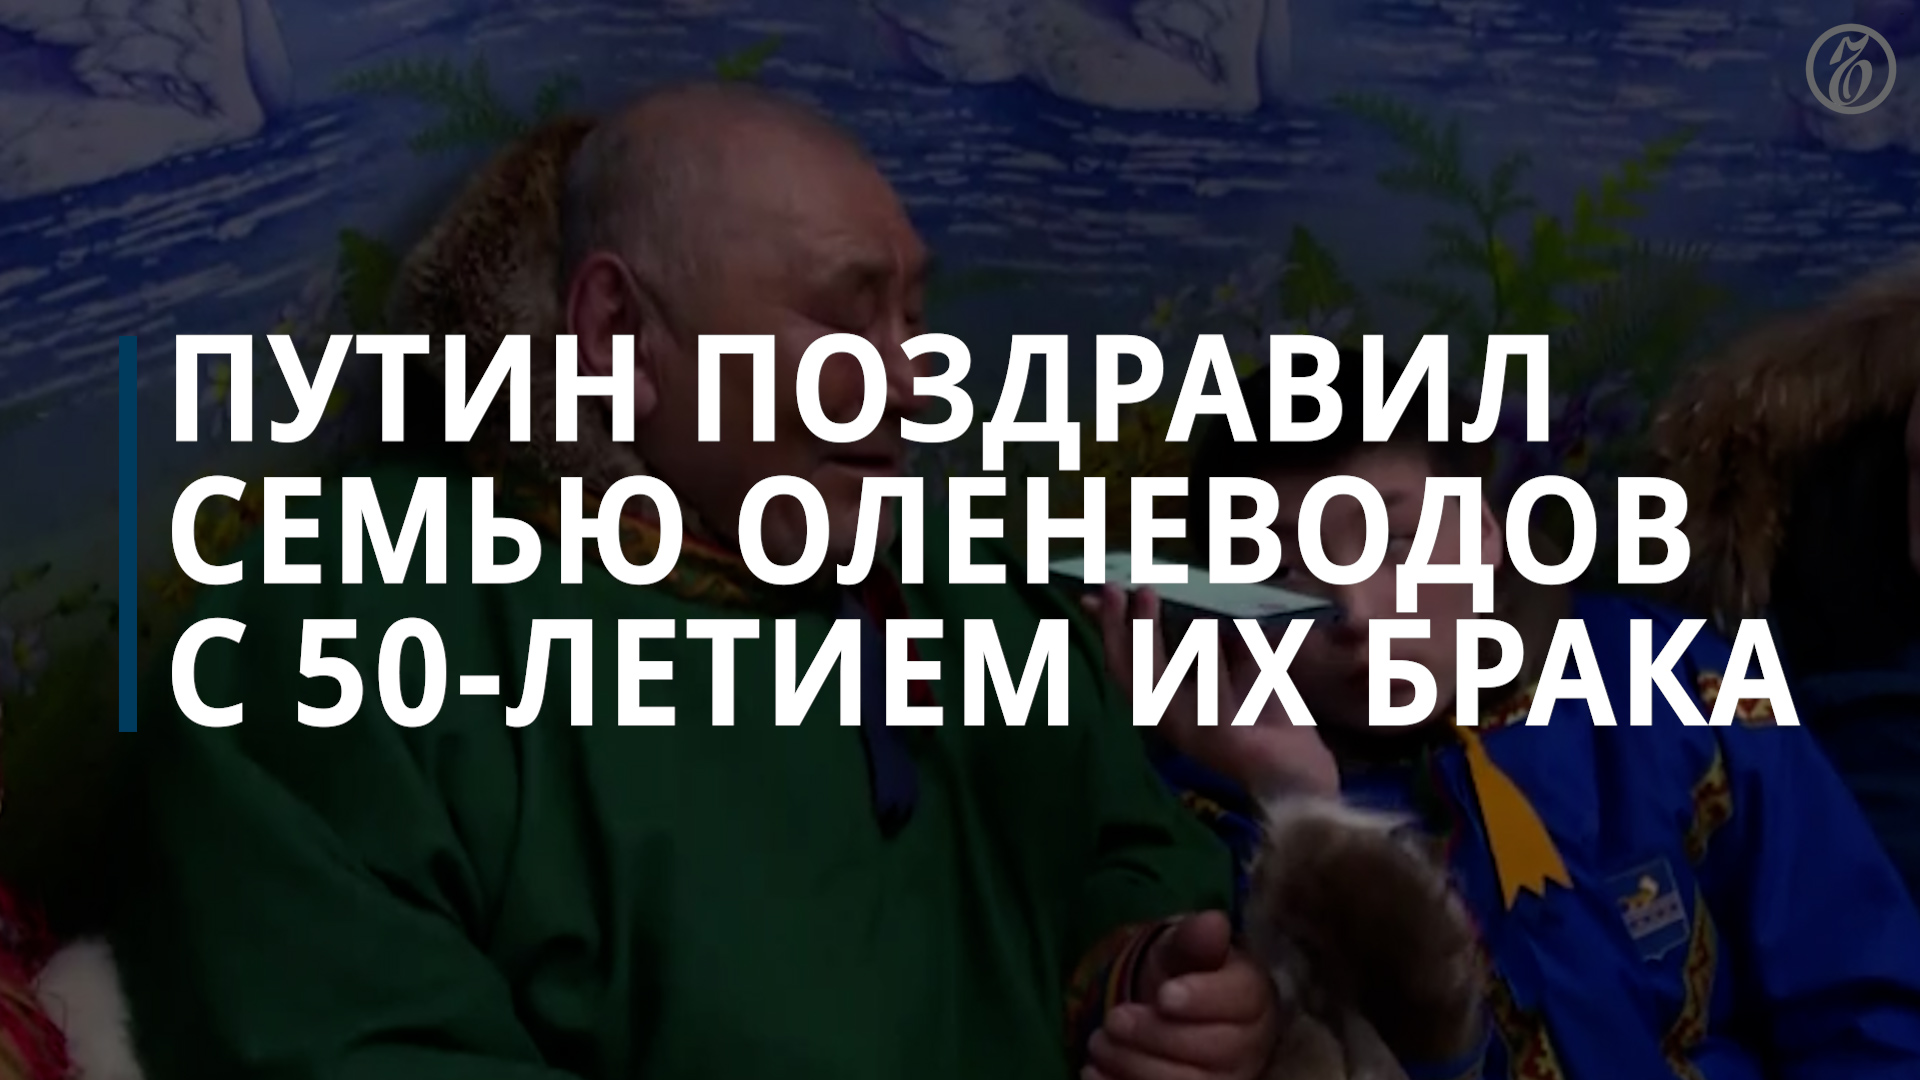 Путин, Лукашенко и космонавты поздравили оленеводов с Ямала с золотой свадьбой — Коммерсантъ